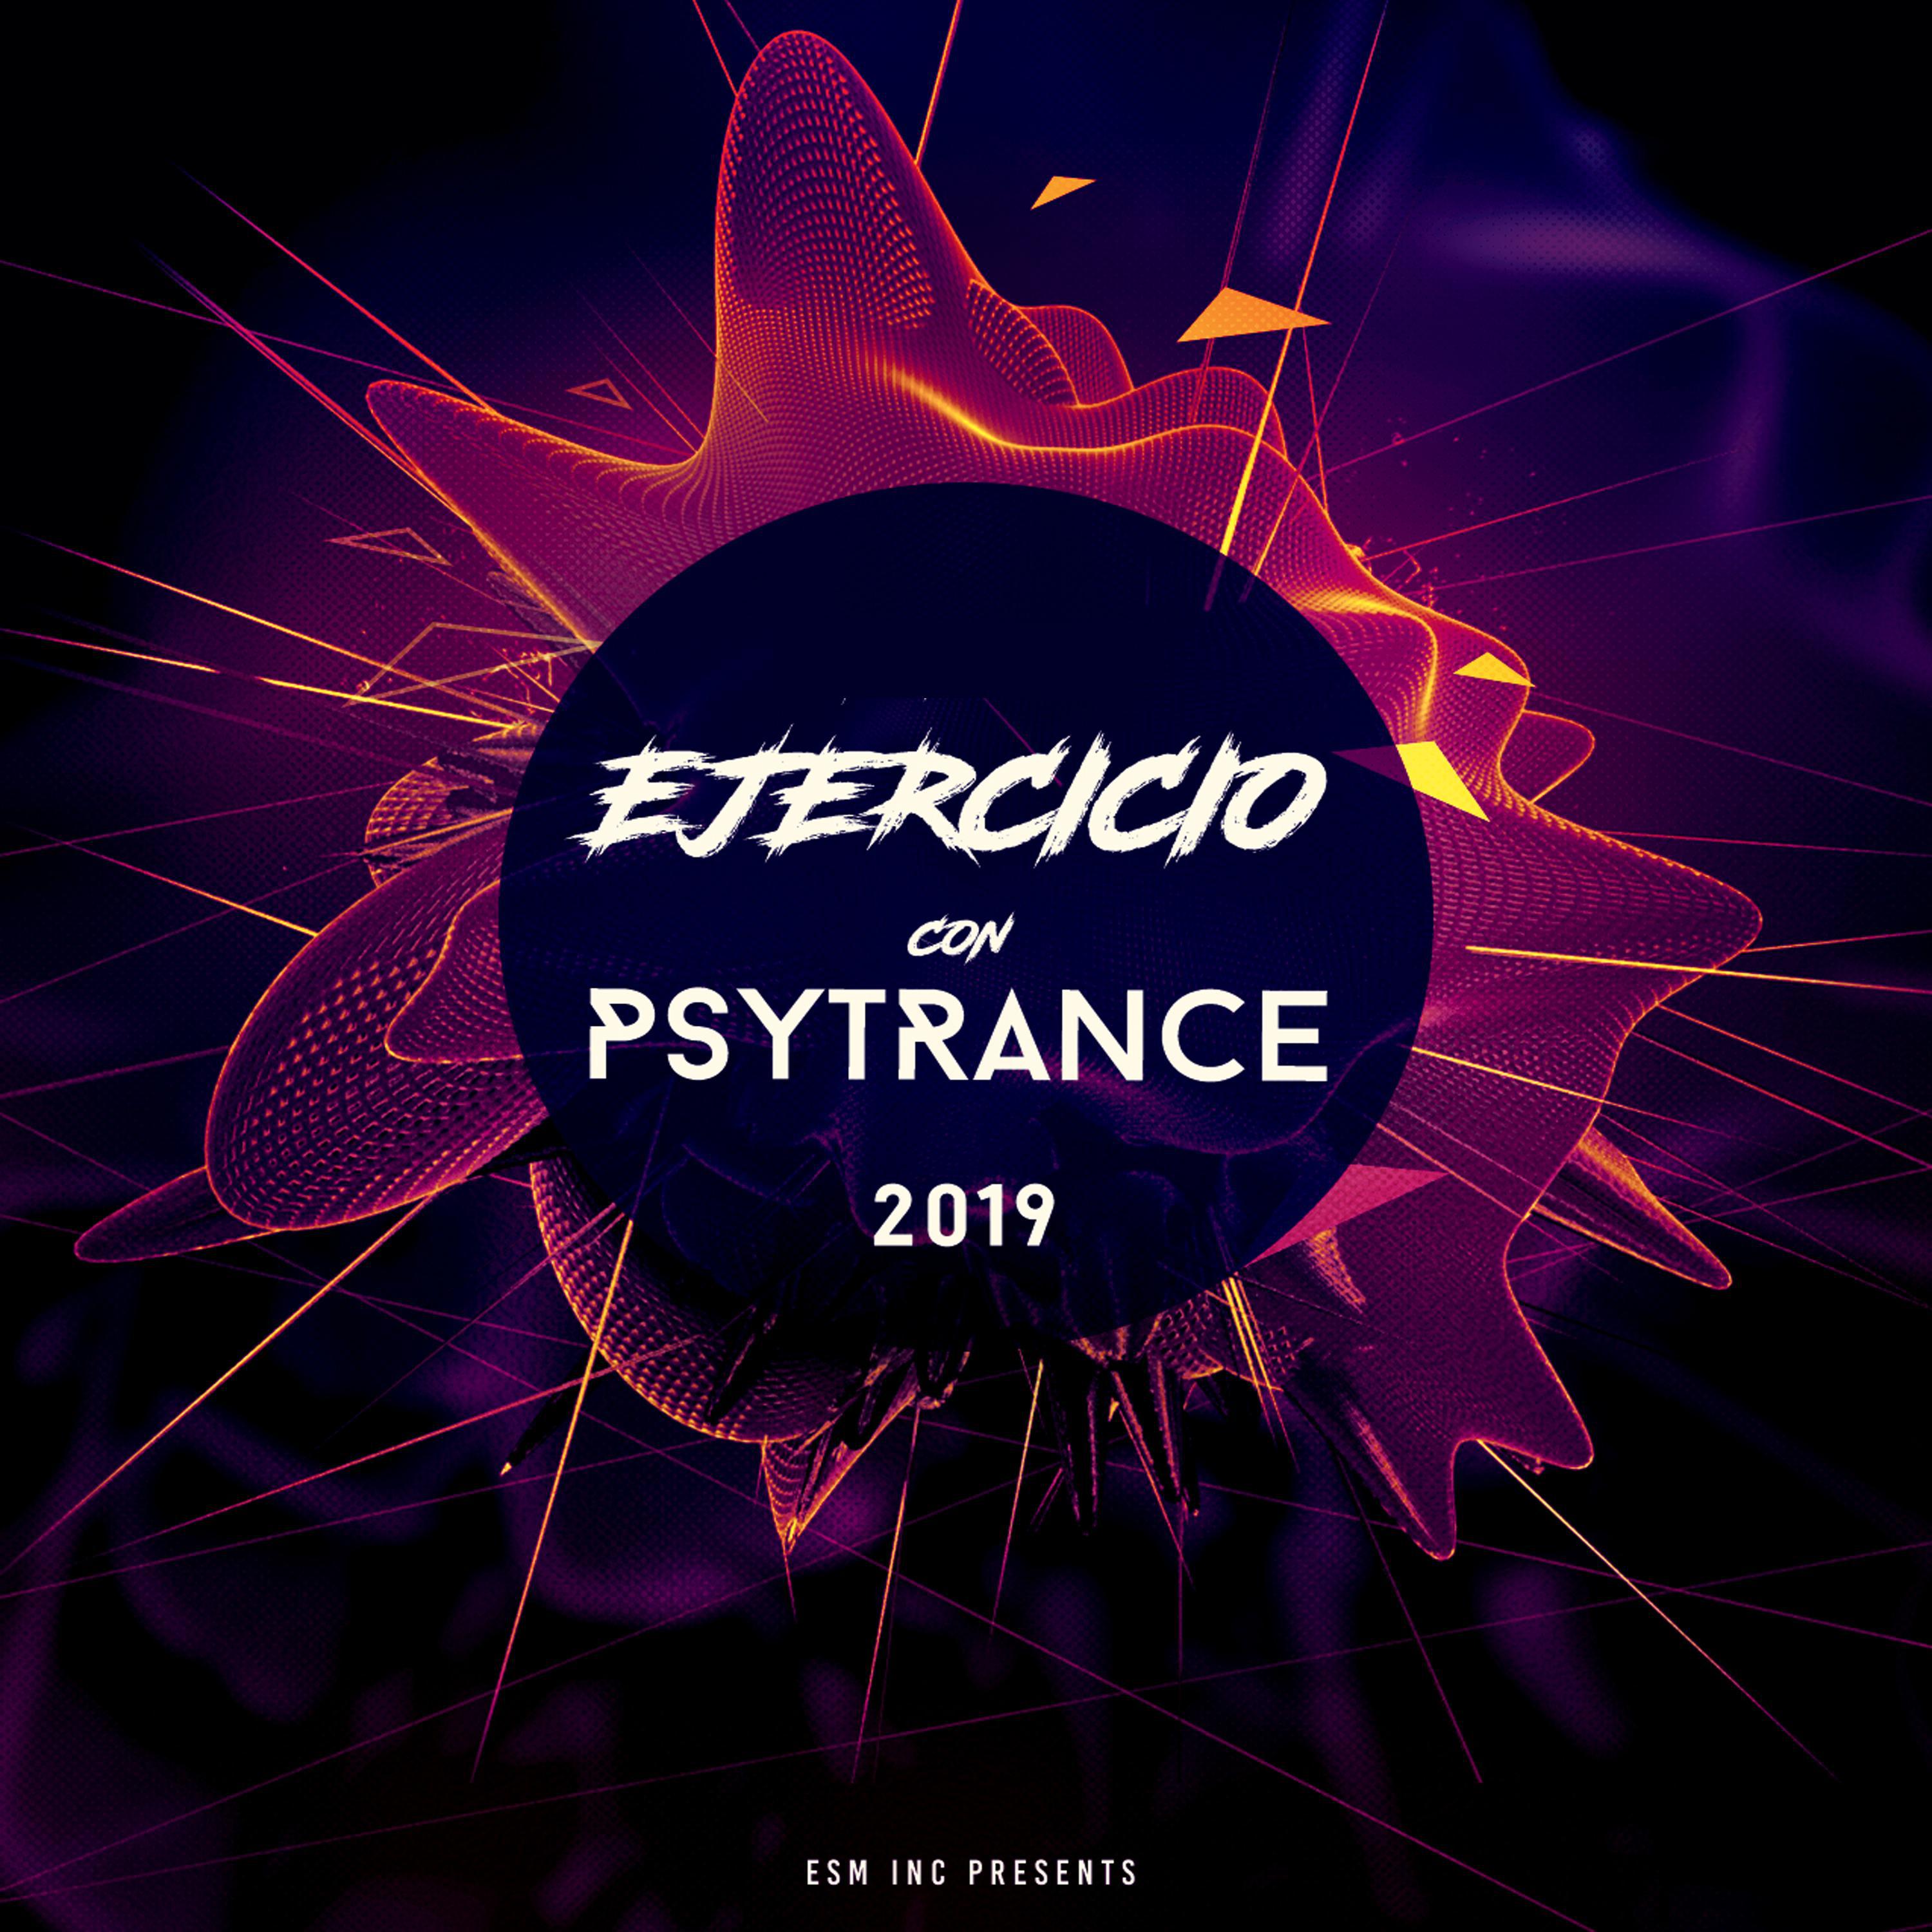 Ejercicio Con Psytrance 2019